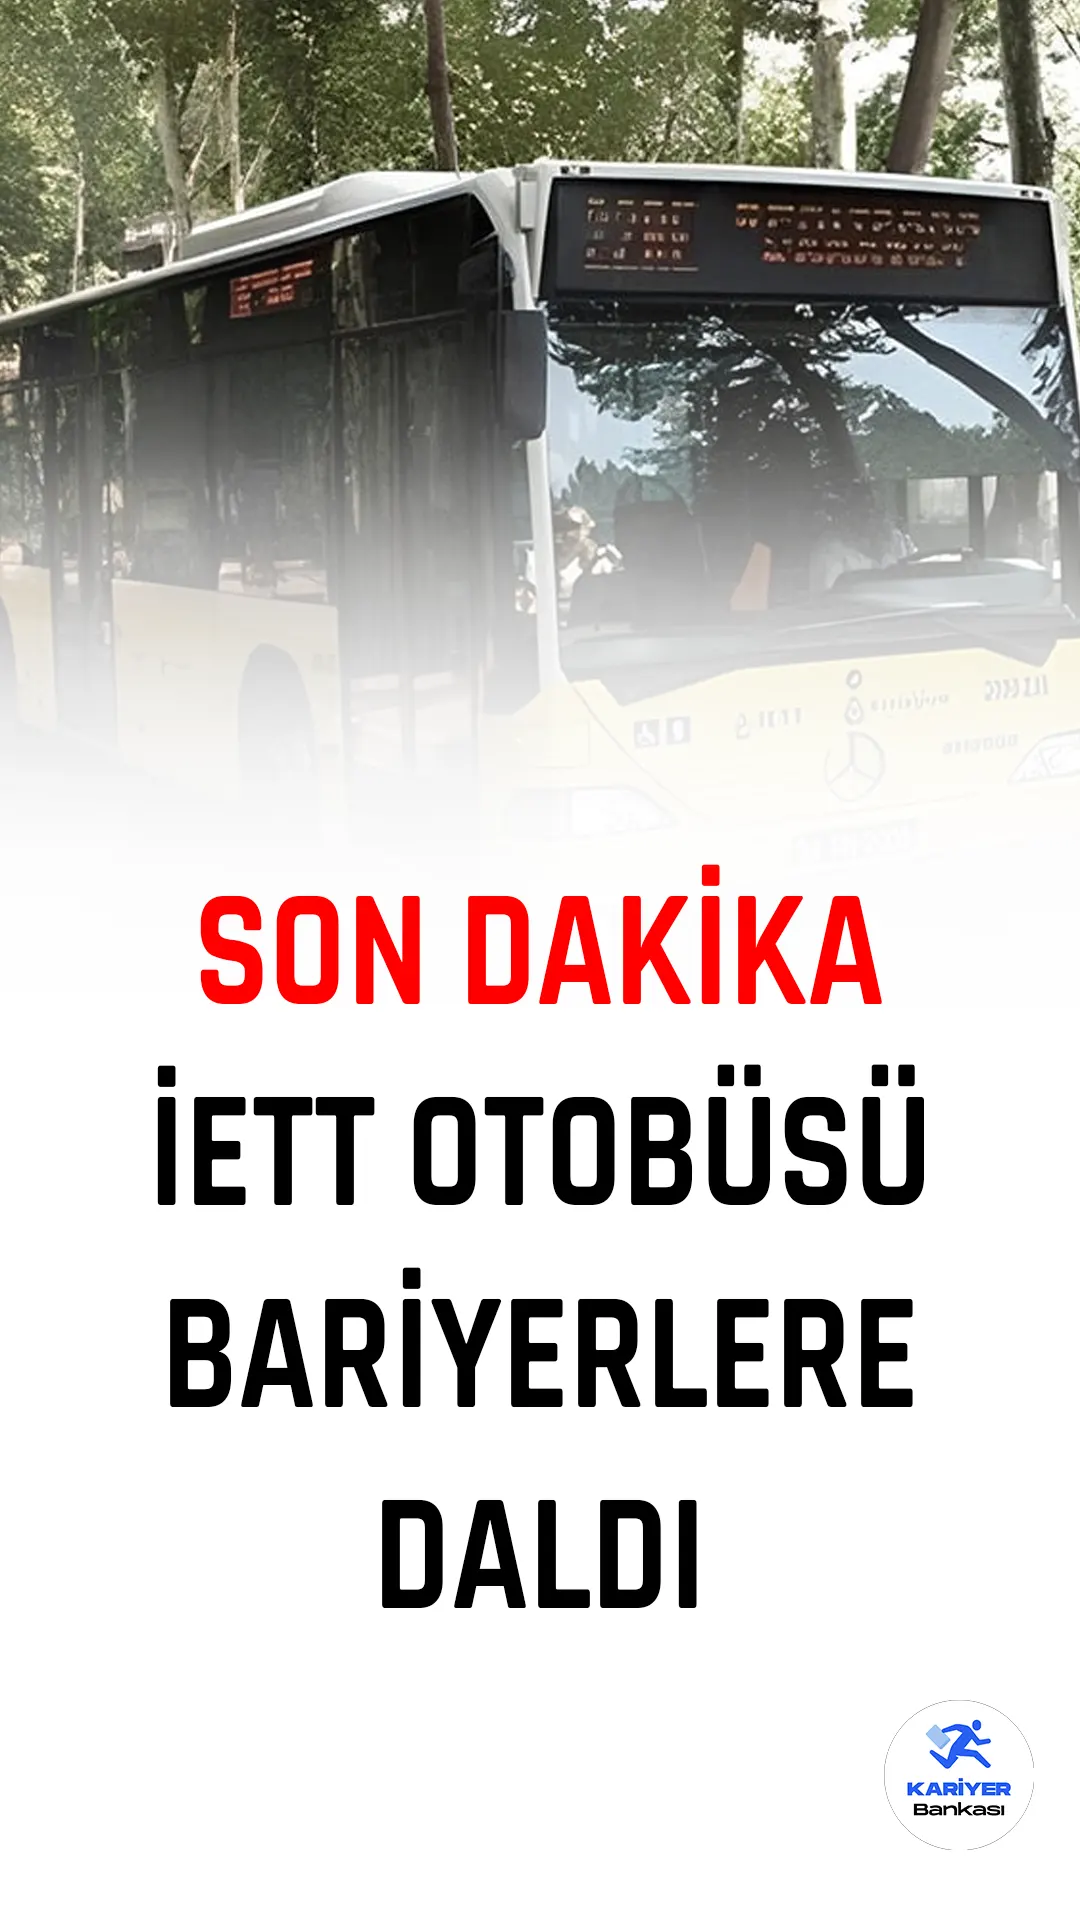 Son Dakika... İstanbul Sultangazi Arnavutköy yolundaki Habipler girişinde bir İETT otobüsü bariyerlere çarptı.